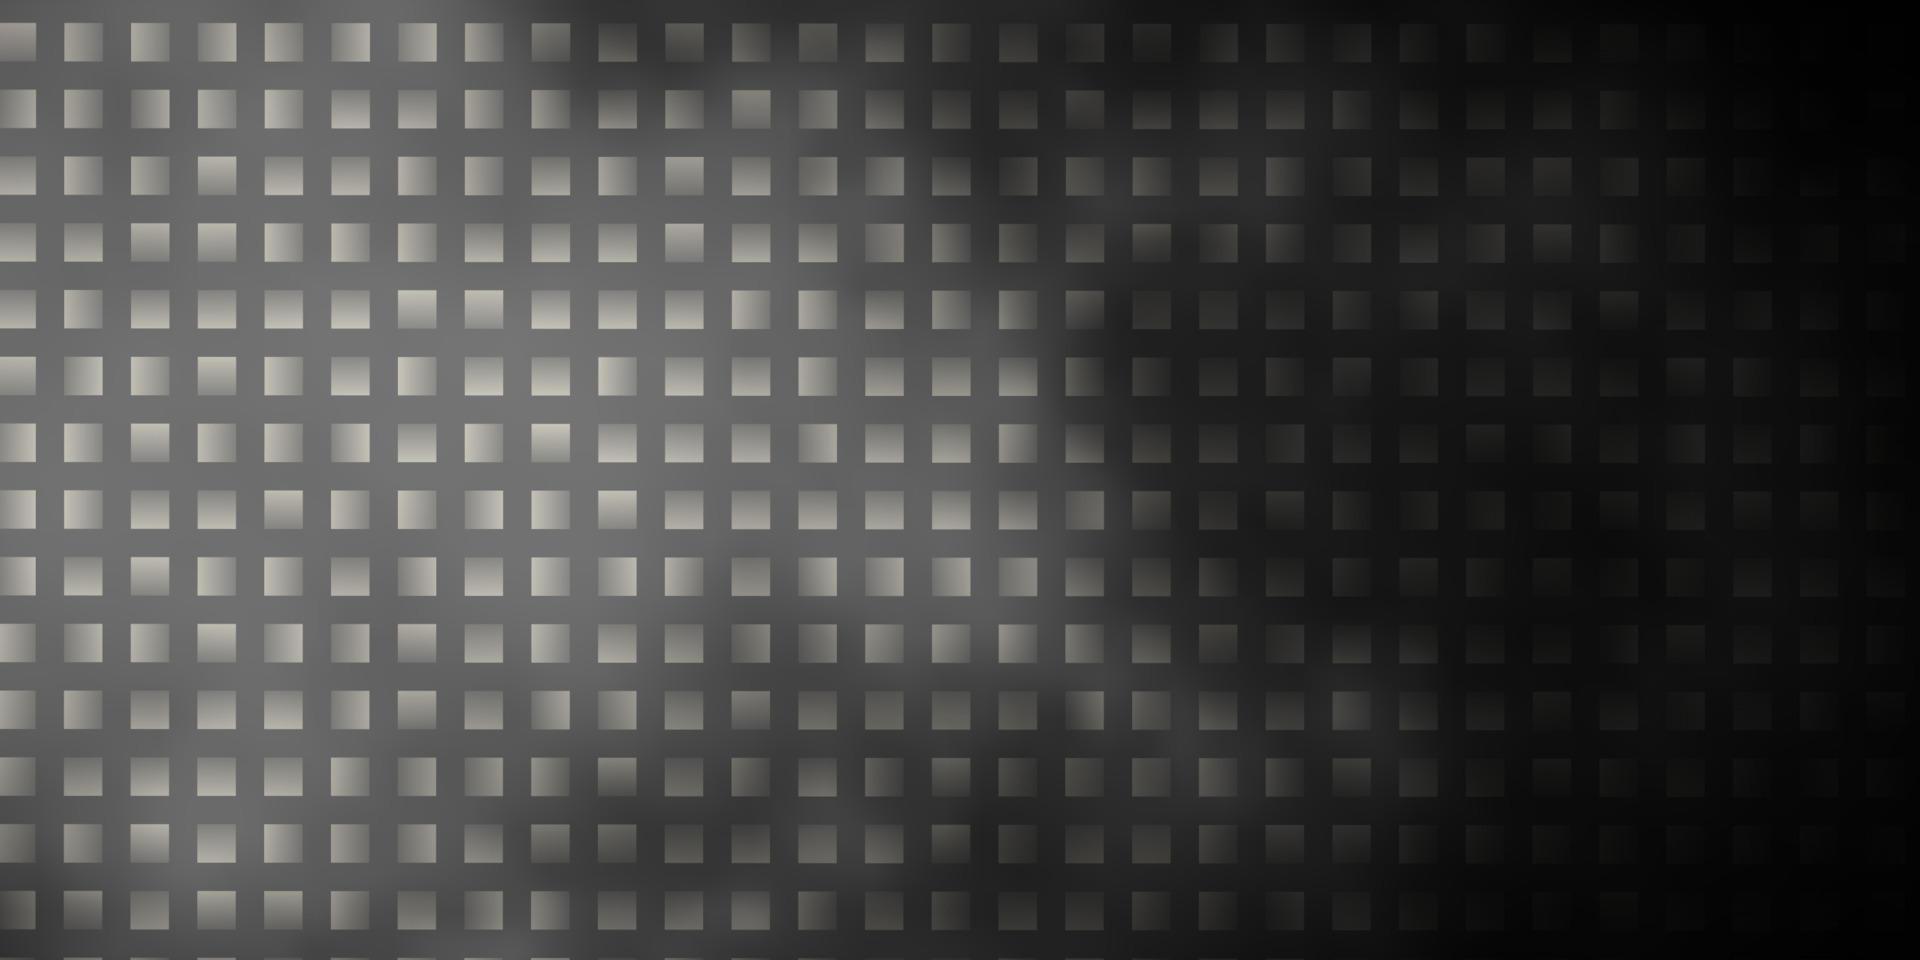 plantilla de vector gris oscuro con rectángulos.